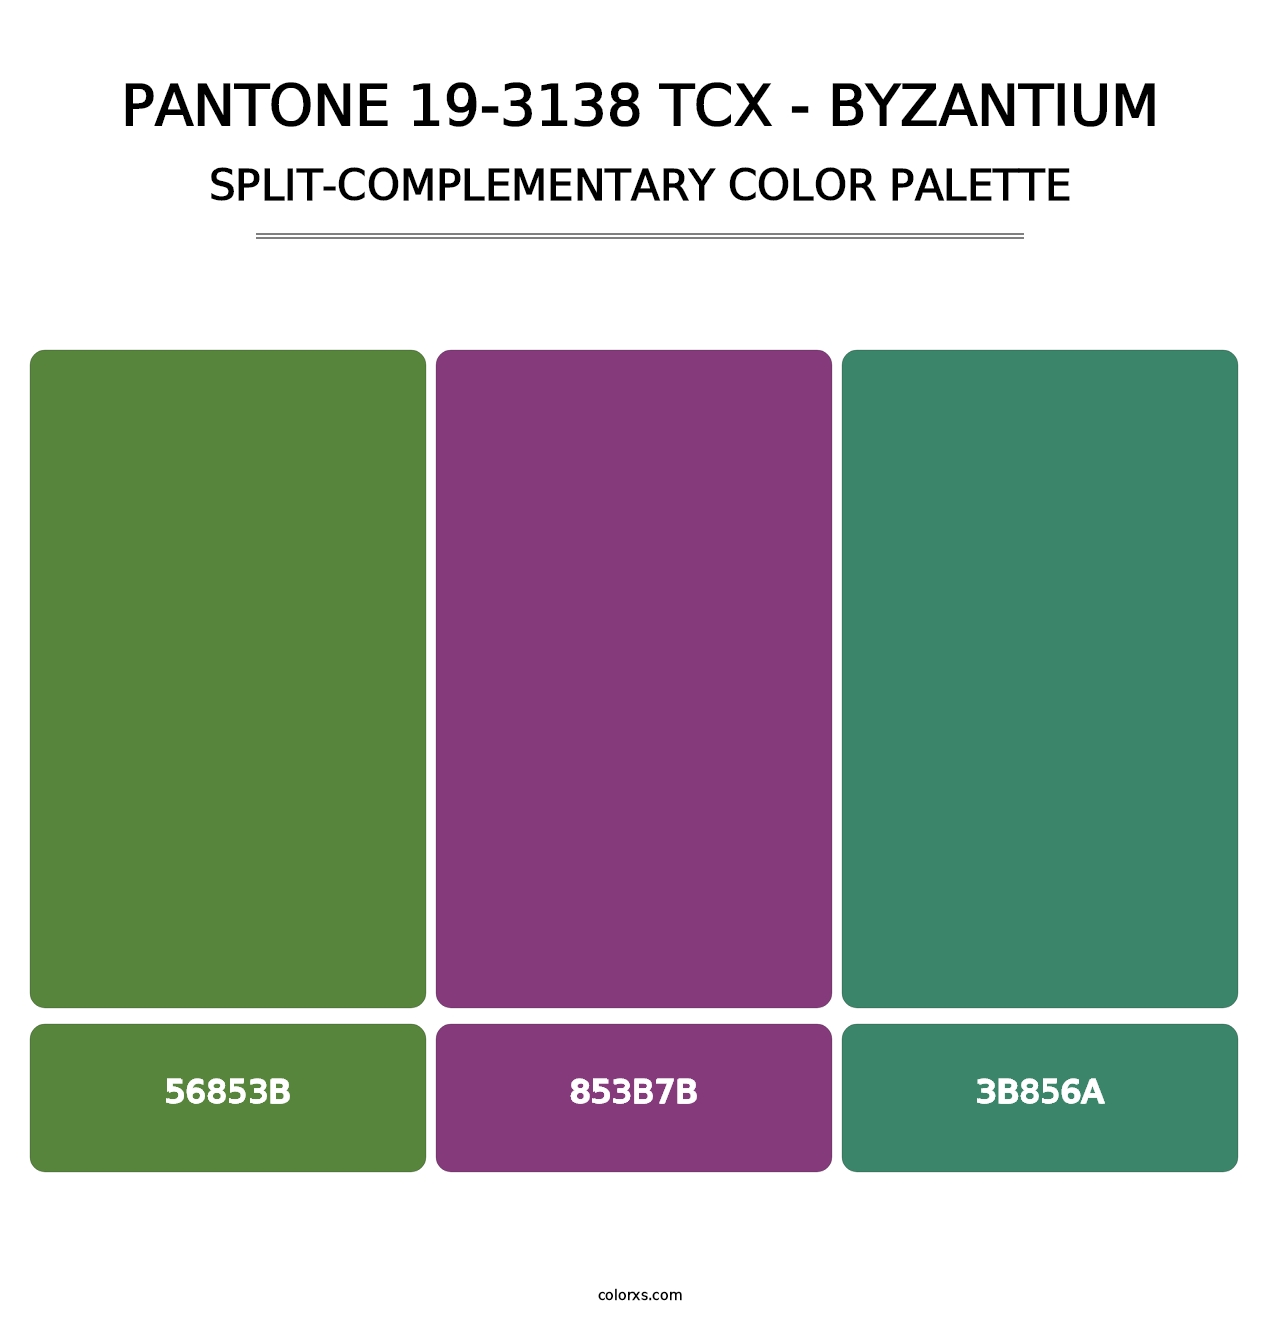 PANTONE 19-3138 TCX - Byzantium - Split-Complementary Color Palette